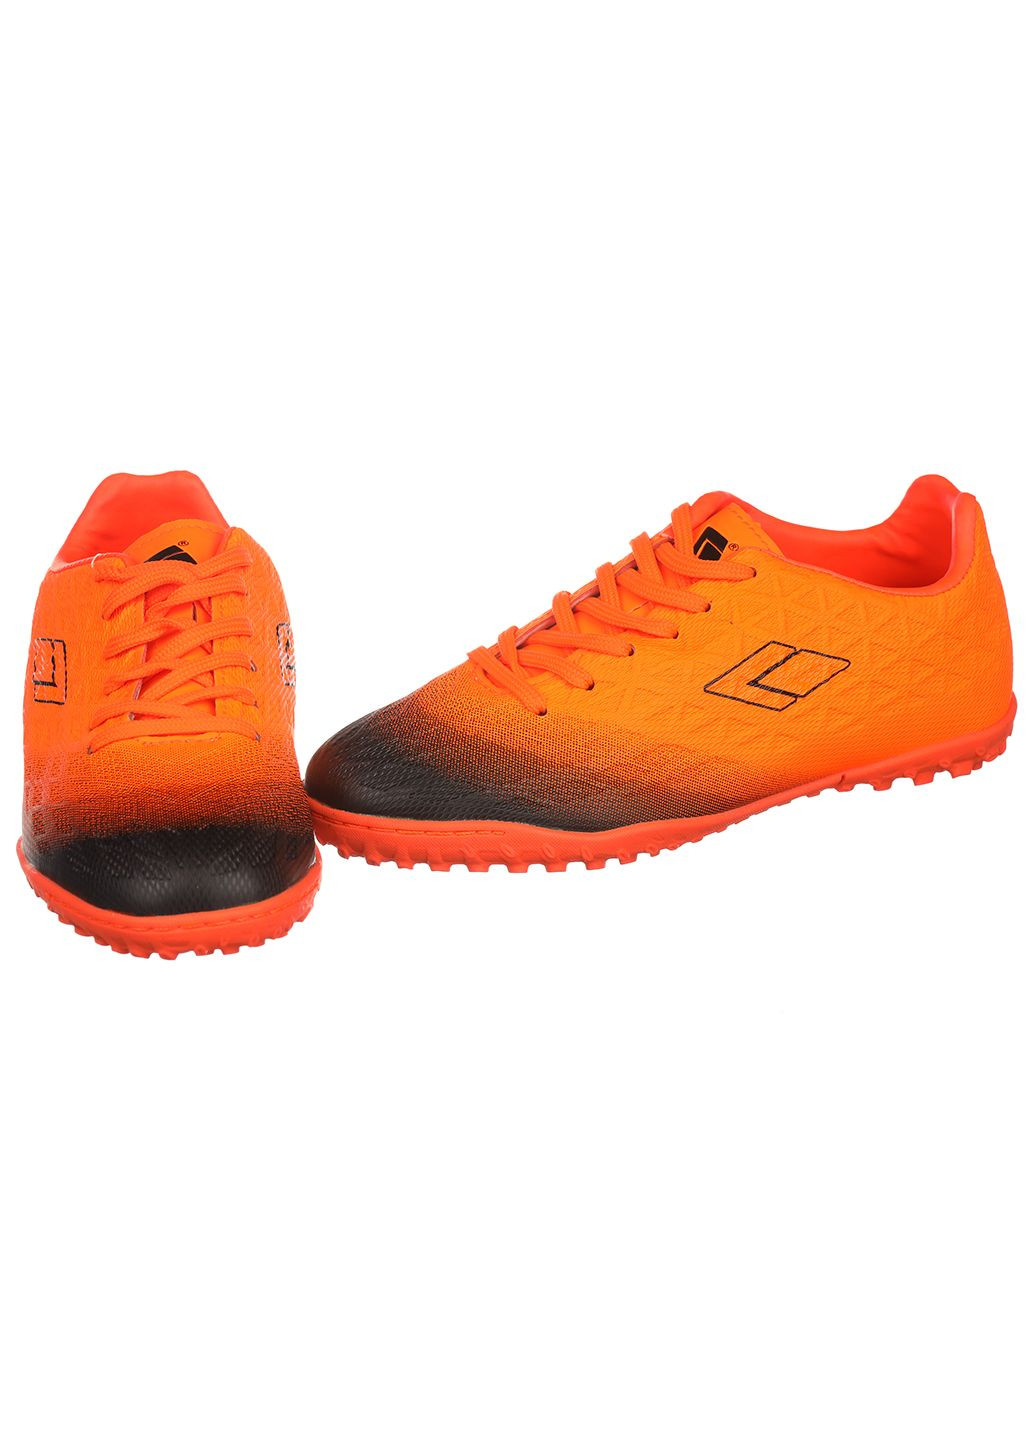 Оранжевые детские сороконожки с искусственной кожи для футбола Difeno